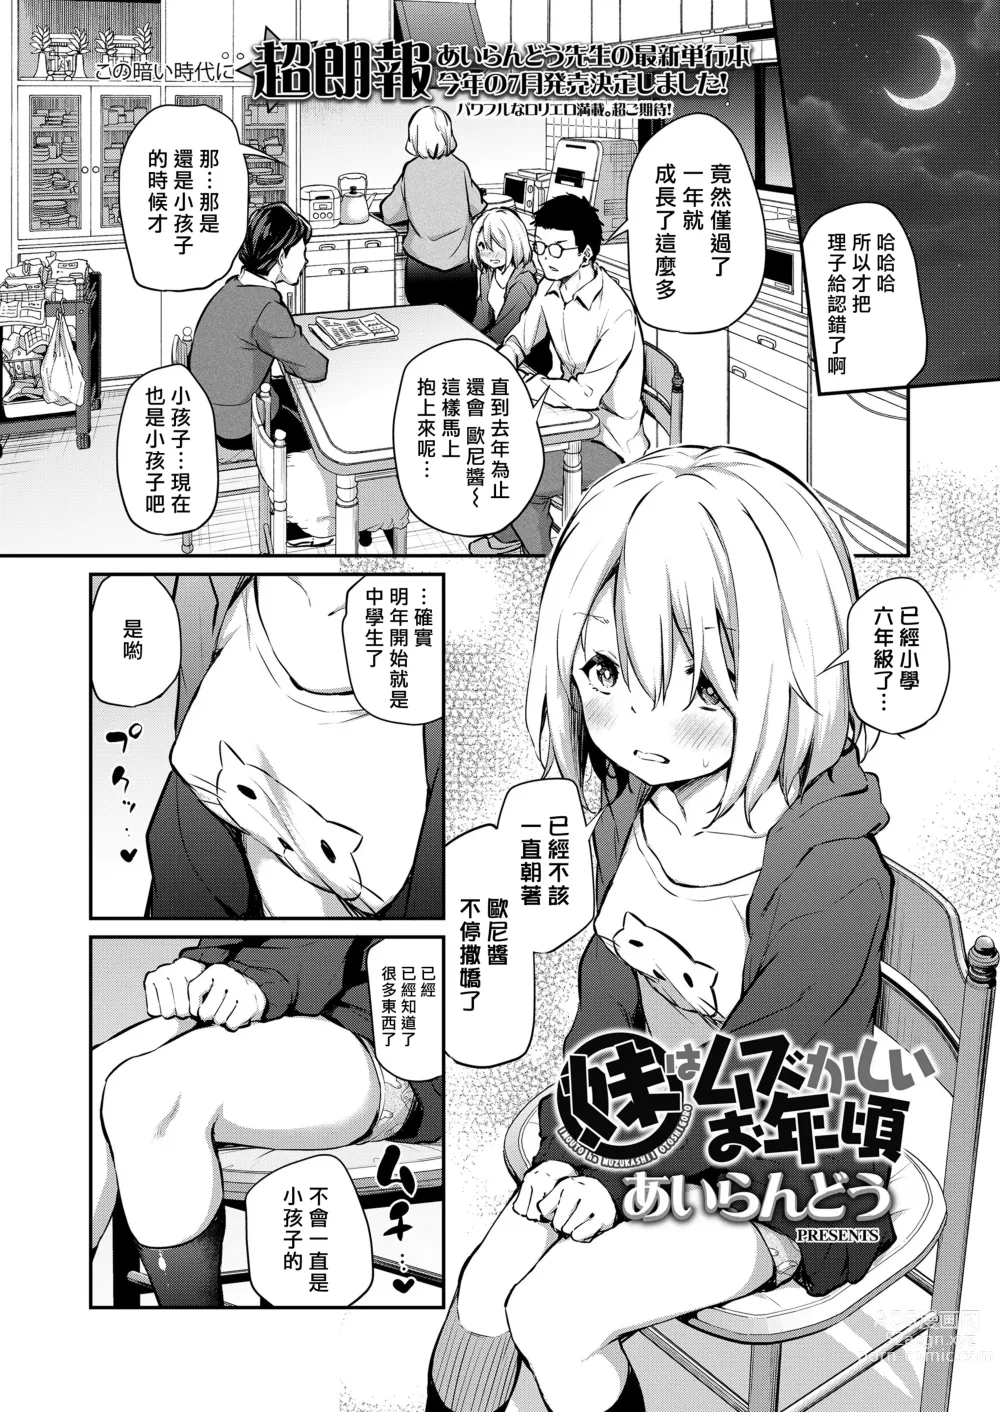 Page 3 of manga Imouto wa Muzukashii Otoshigoro